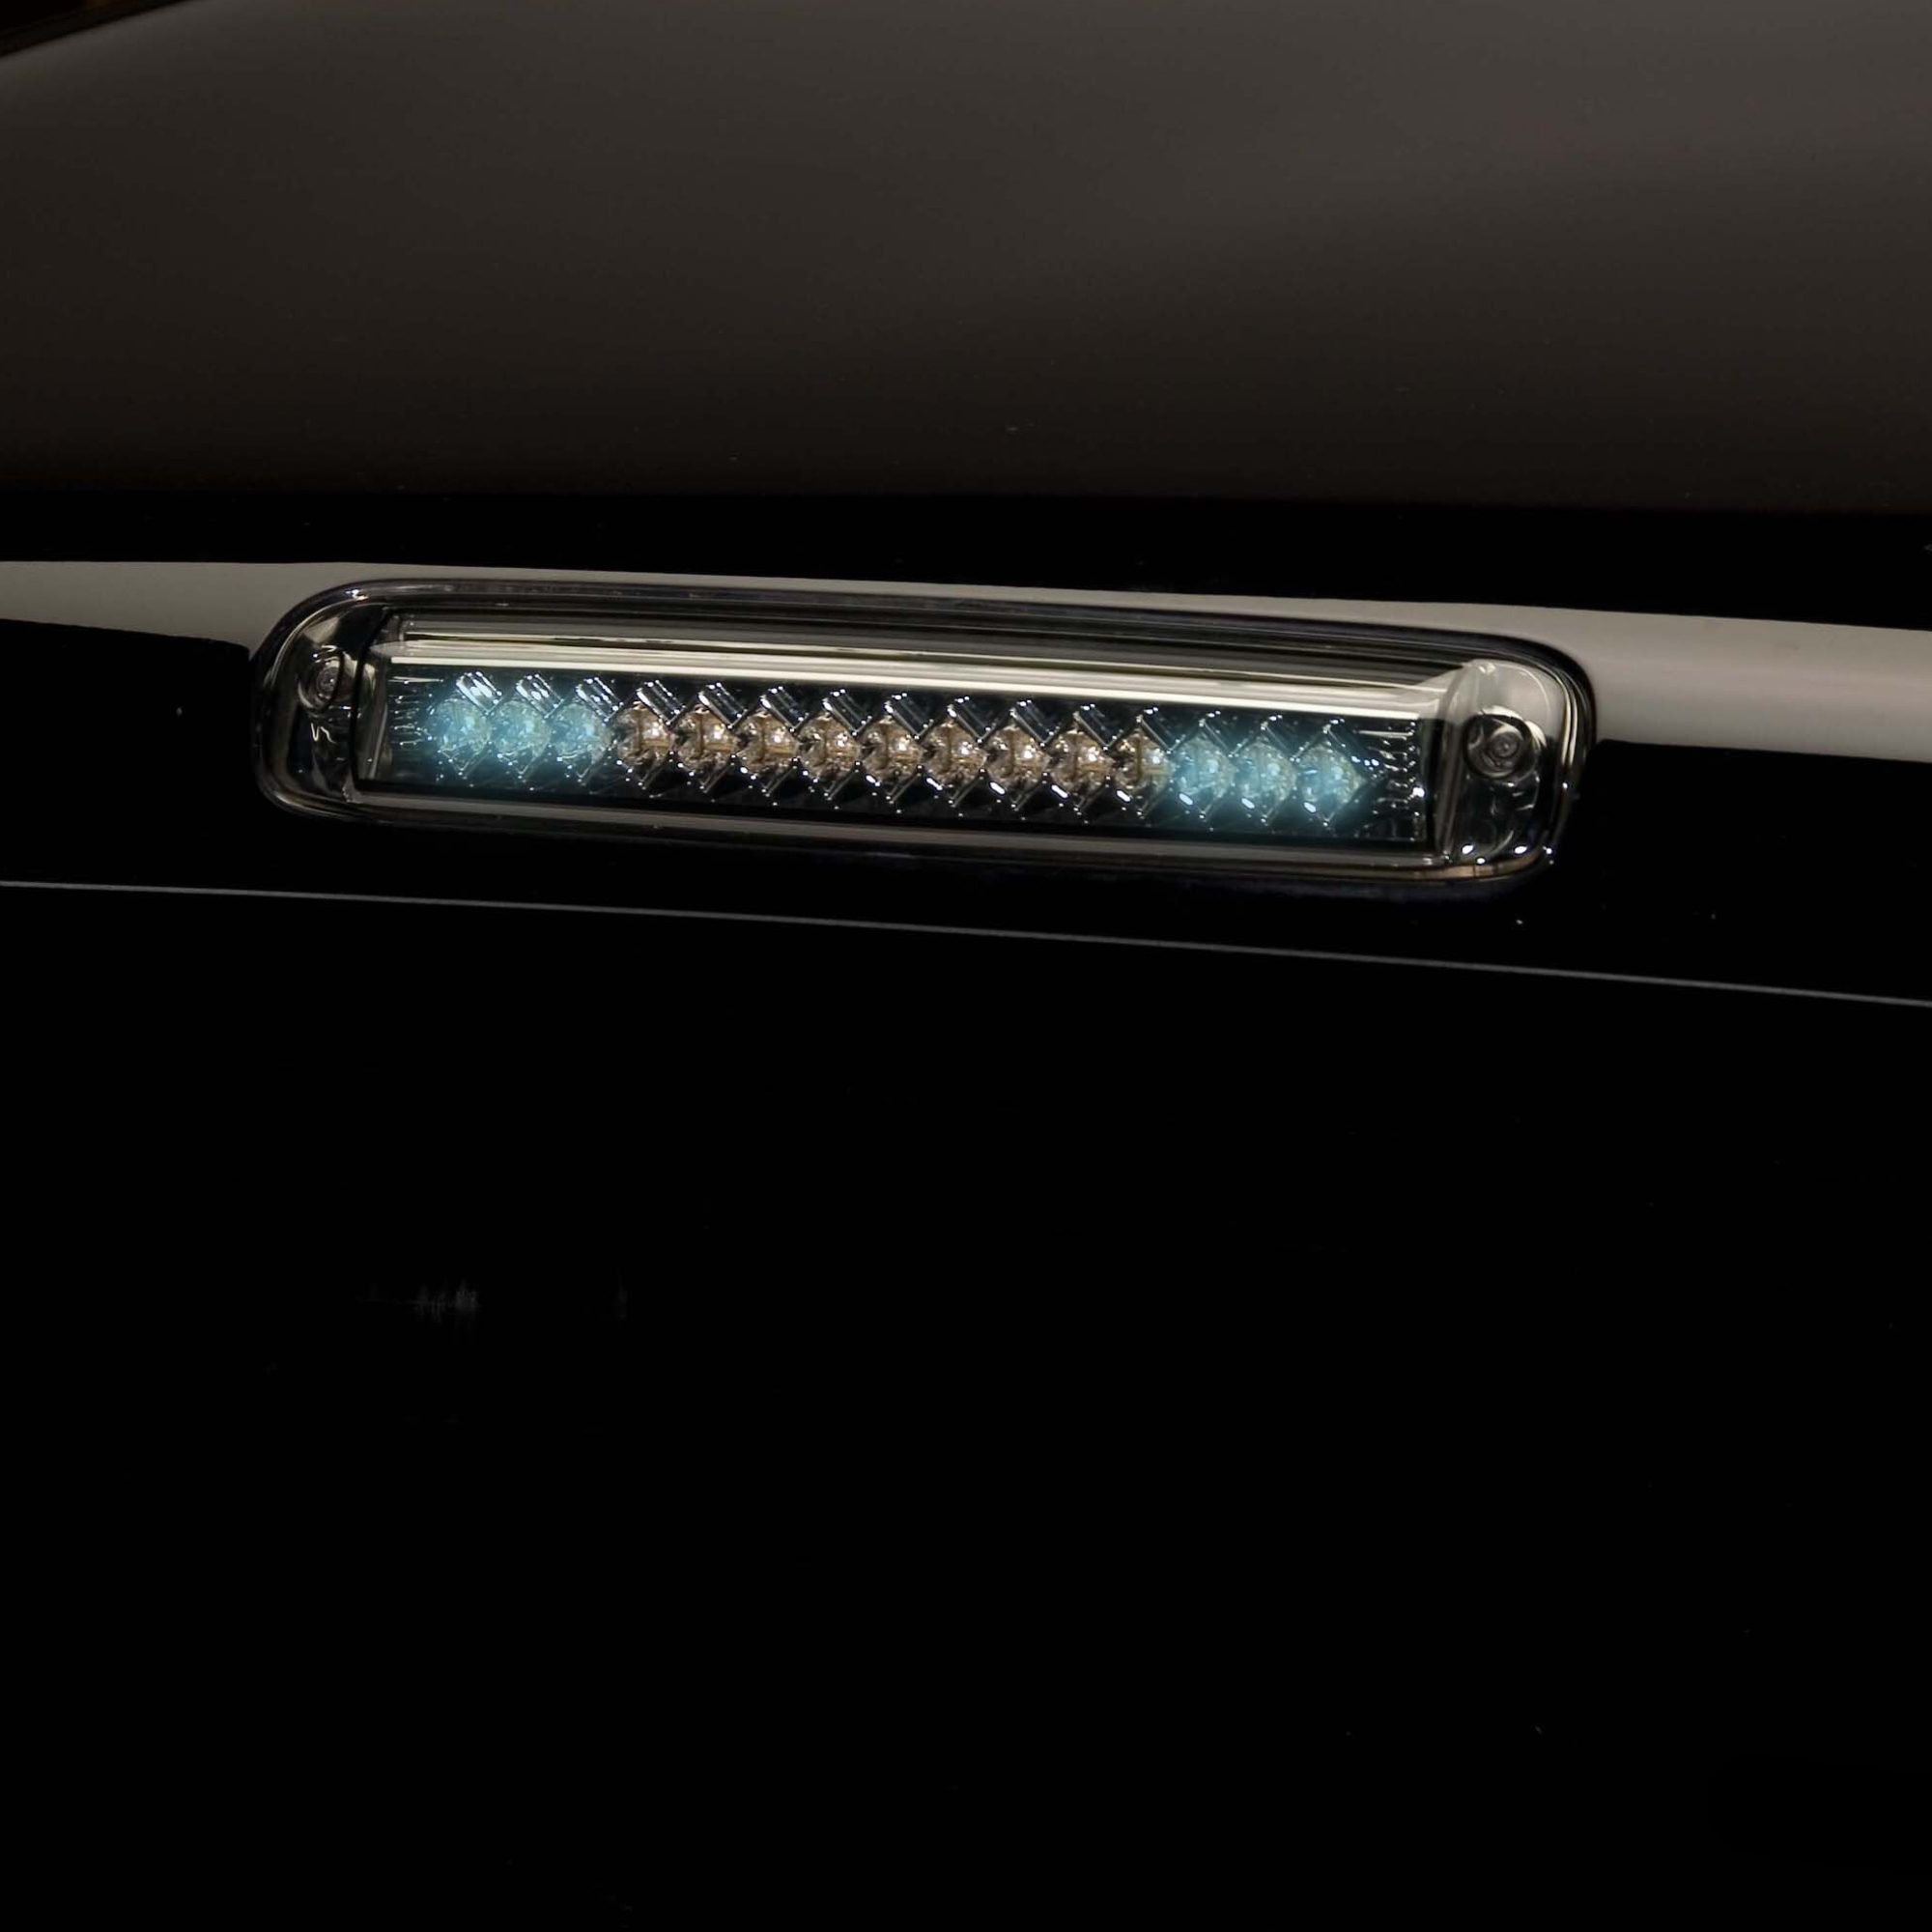 920211 - Putco LED Third Brake Lights - Fits Chevy Silverado / GMC